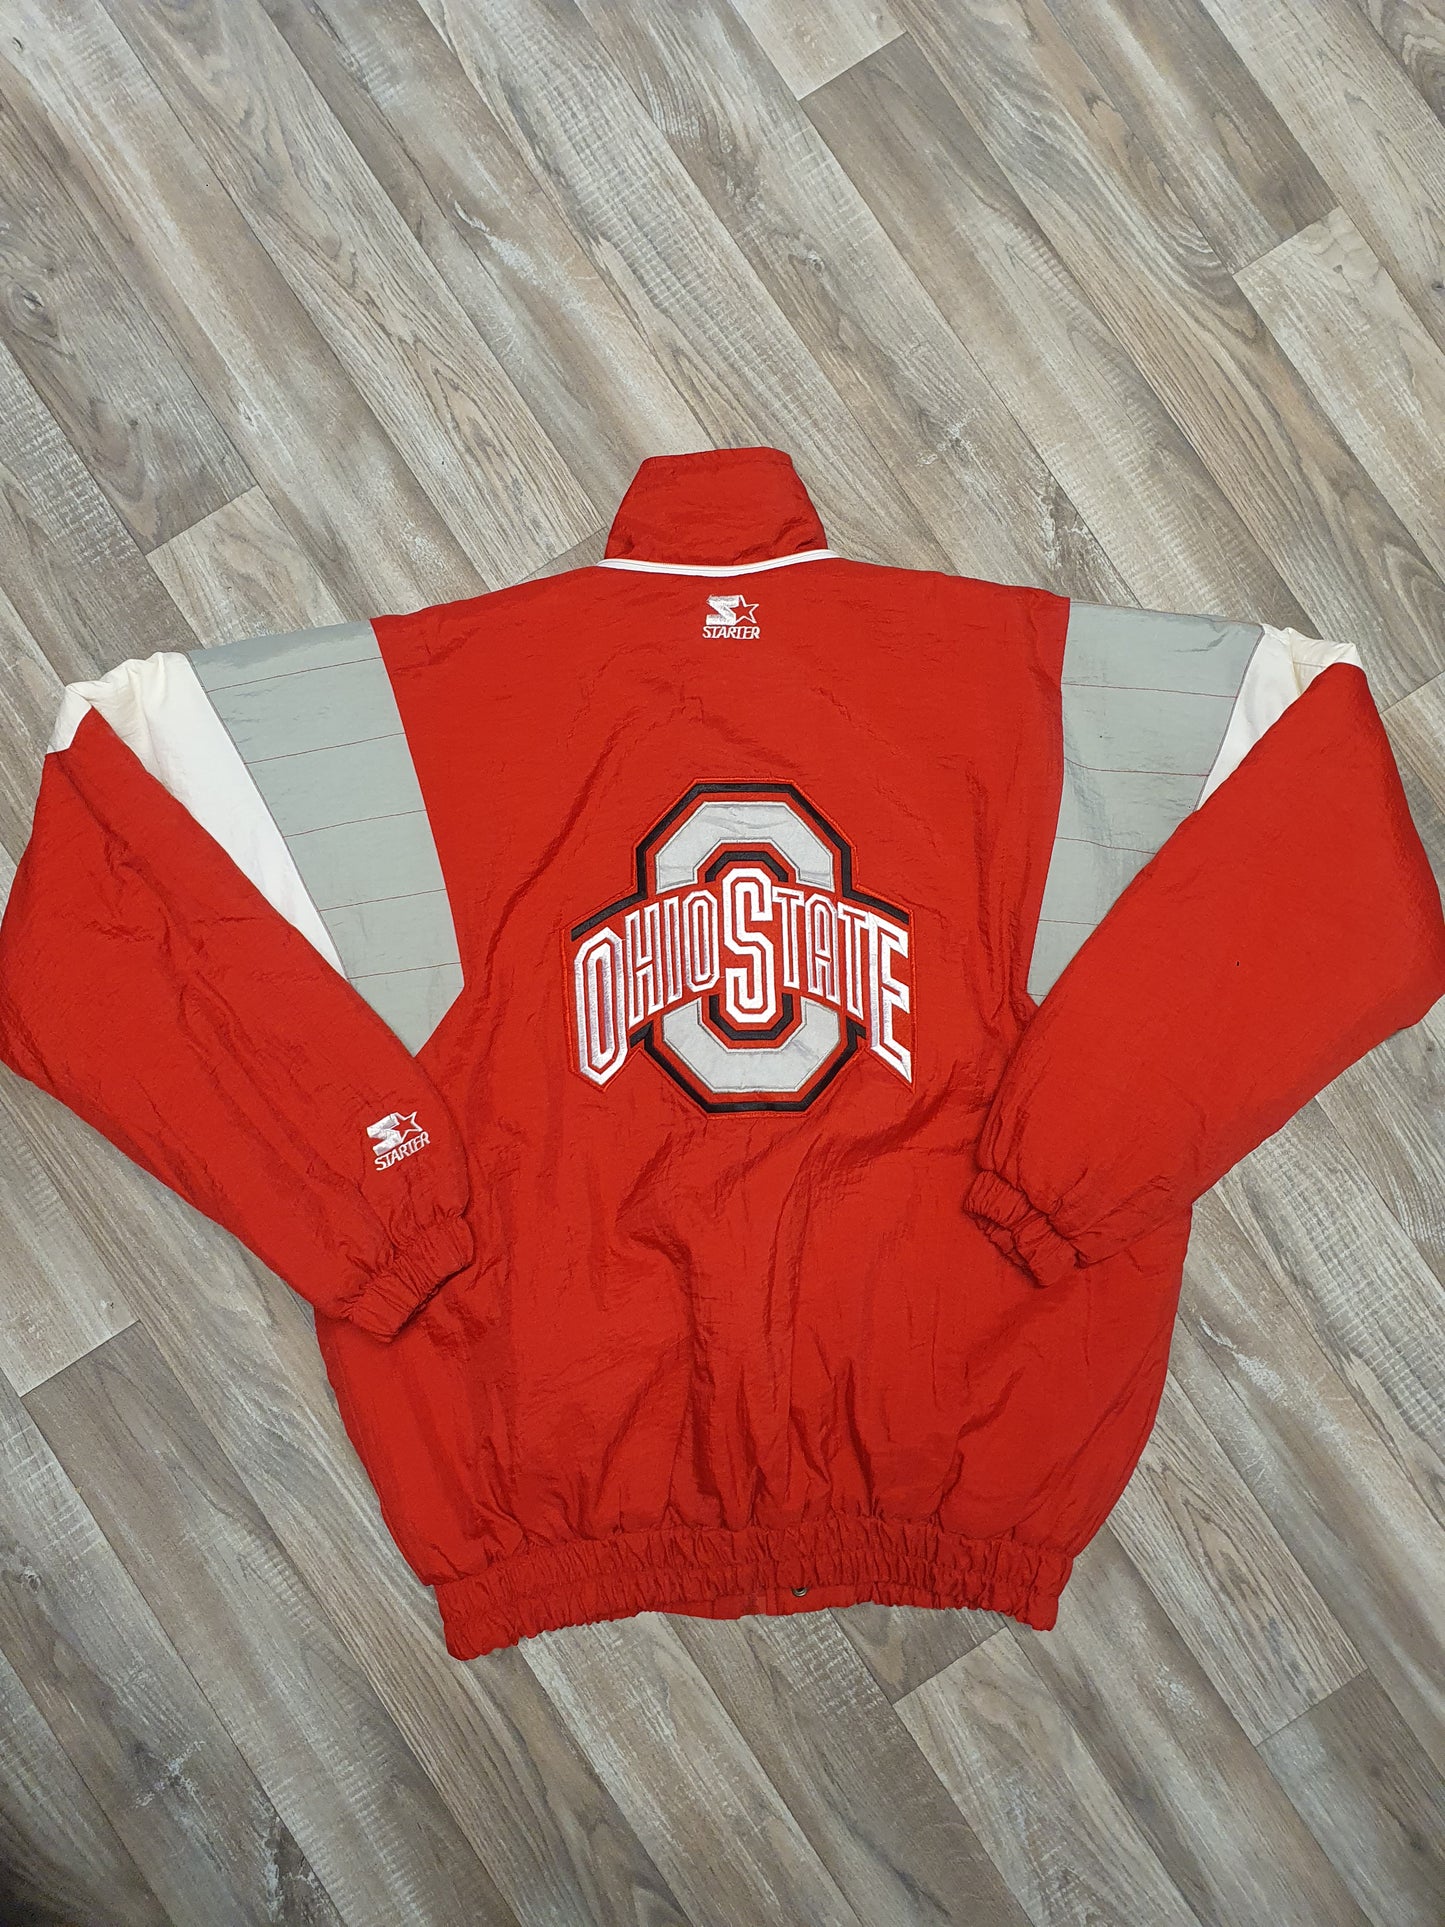 Ohio State Buckeyes Jacket Size Large